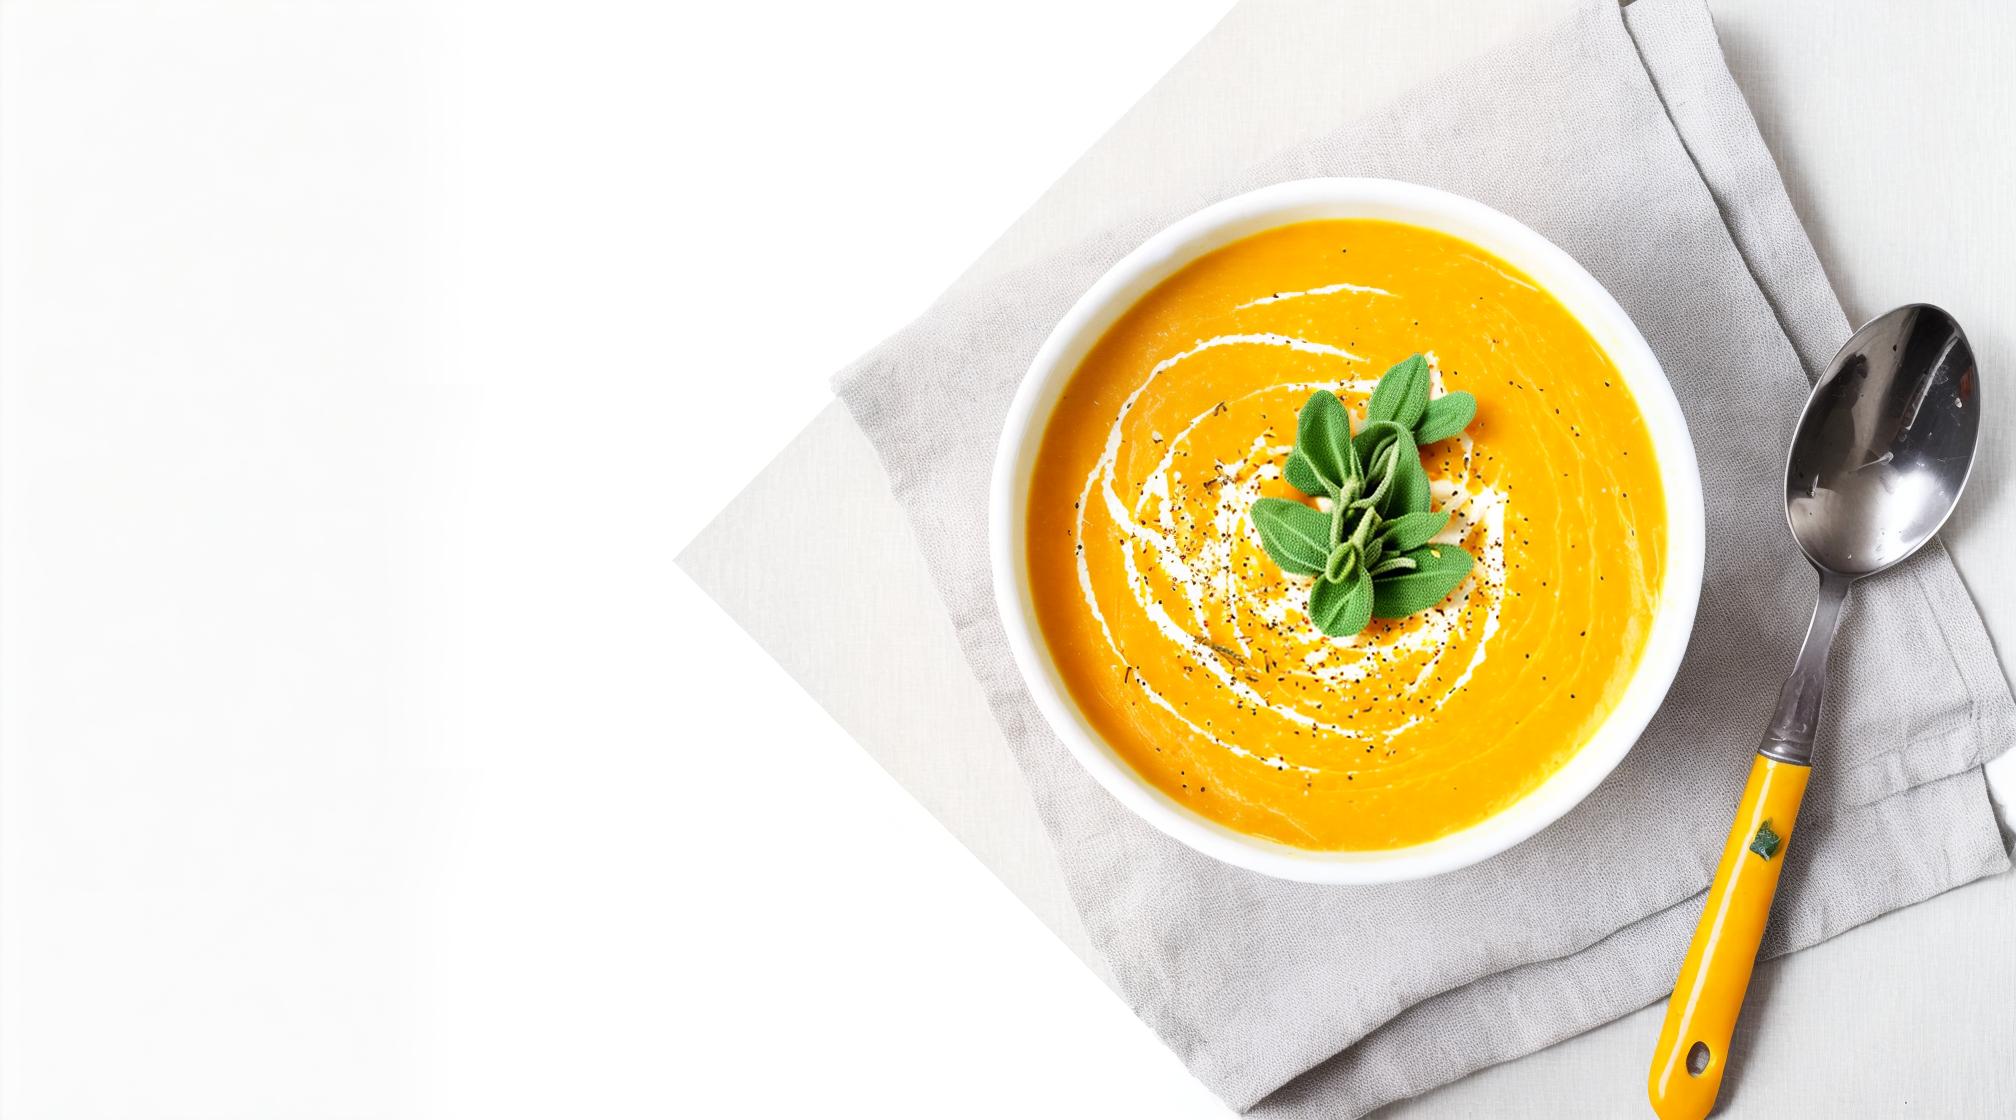  Pumpkin soup with crème fraîche and sage